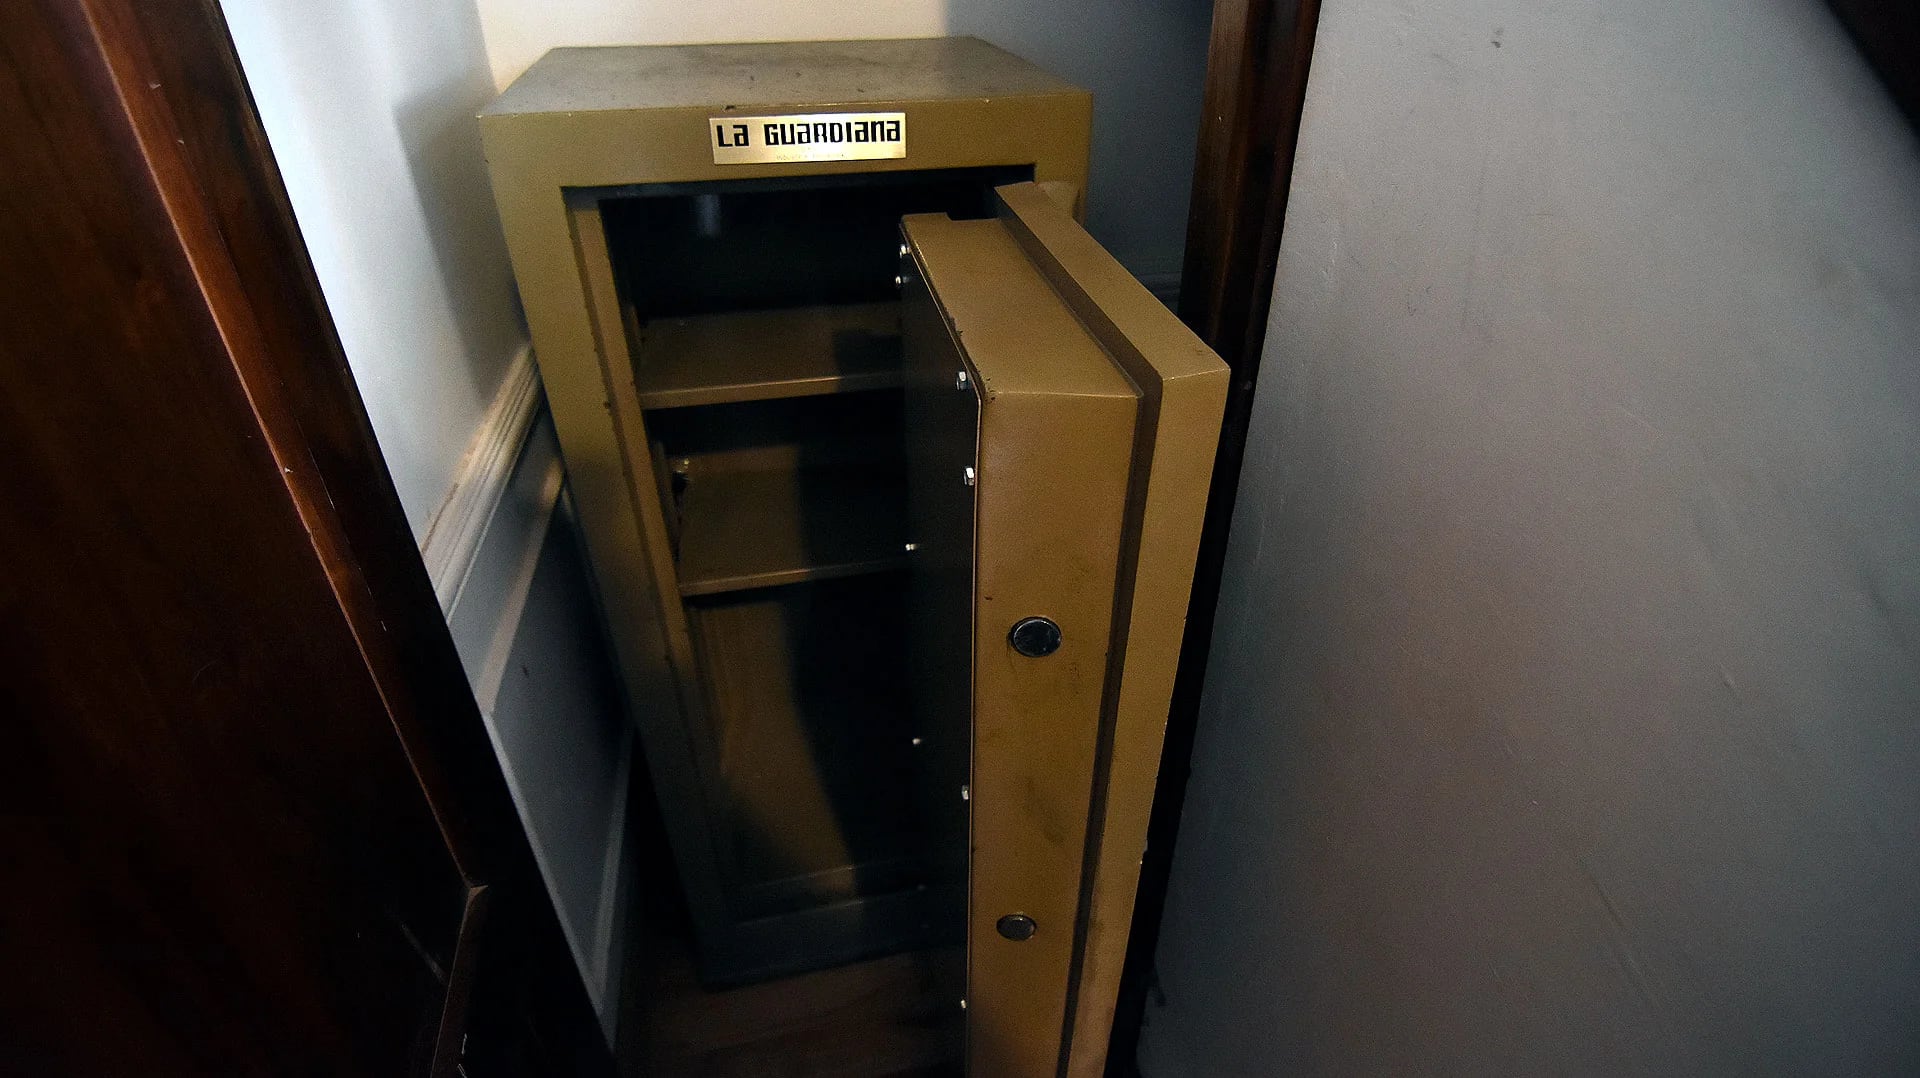 Detrás de una de las puertas, los funcionarios también encontraron una enorme caja fuerte (Nicolás Stulberg)